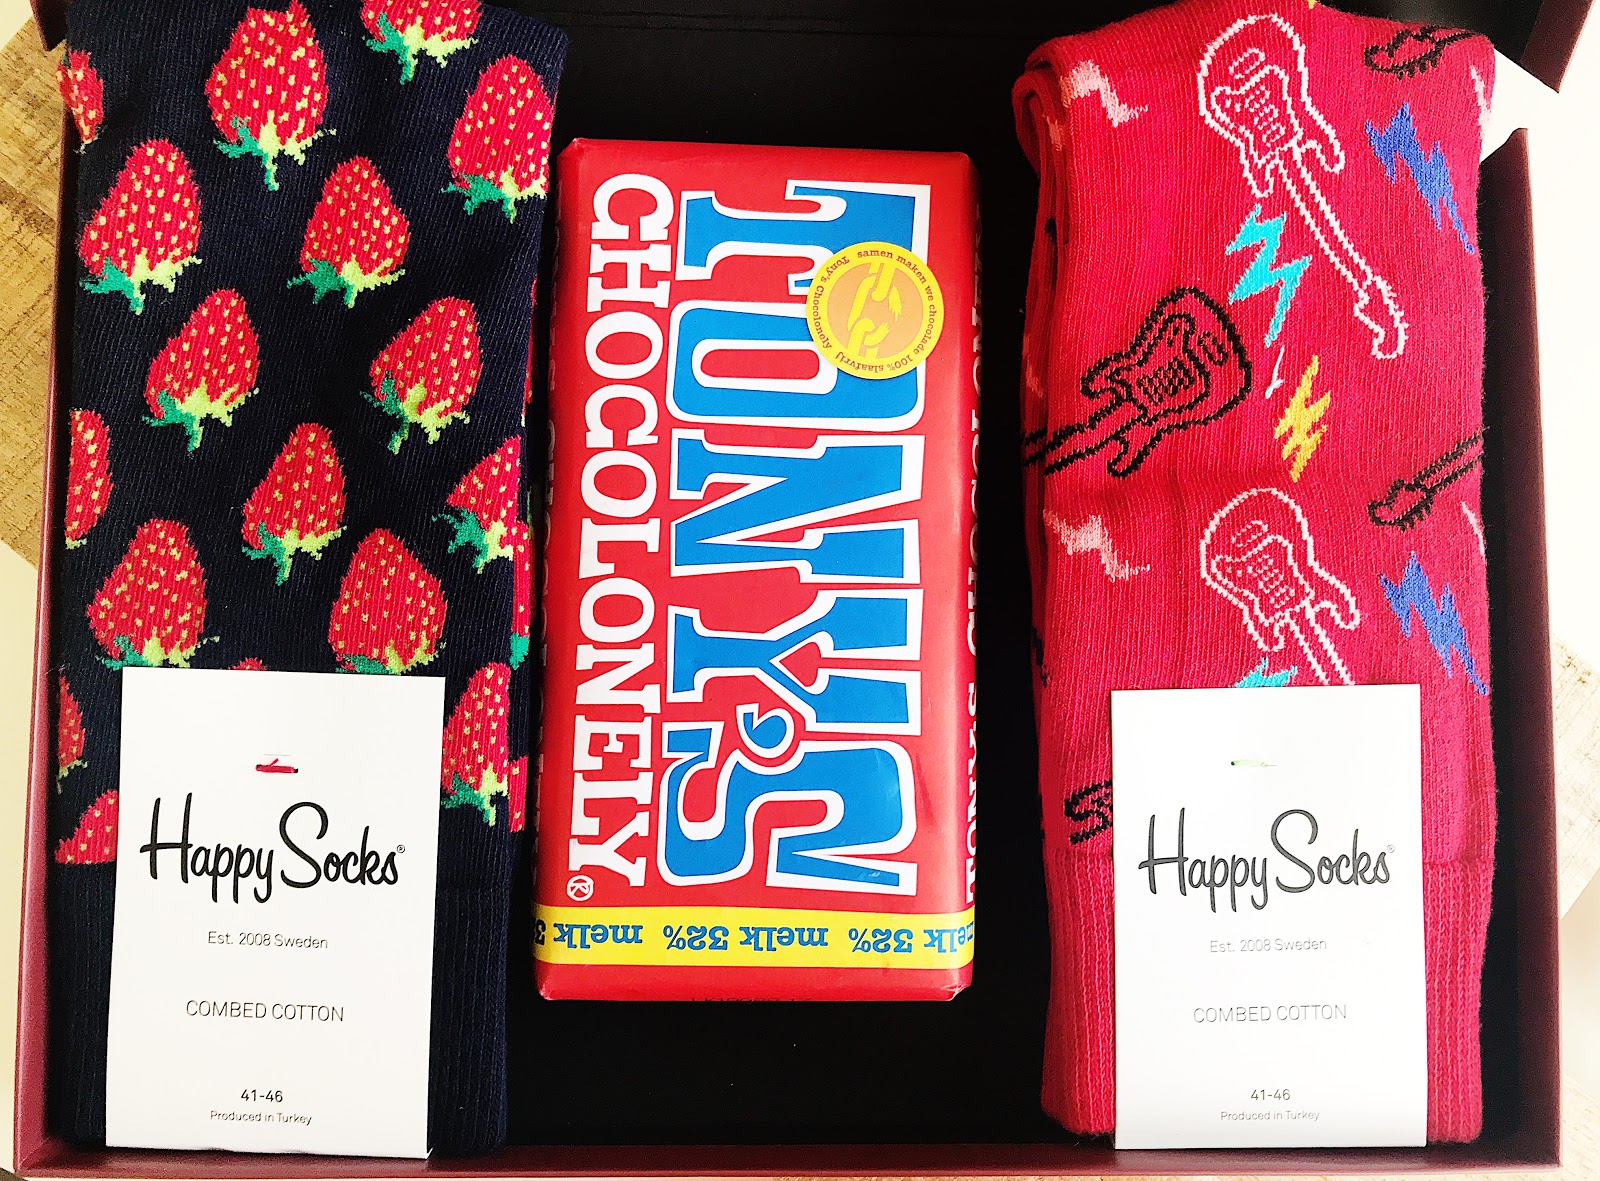 De vrolijkste sokken om te dragen Happy Socks HemdvoorHem cadeauset